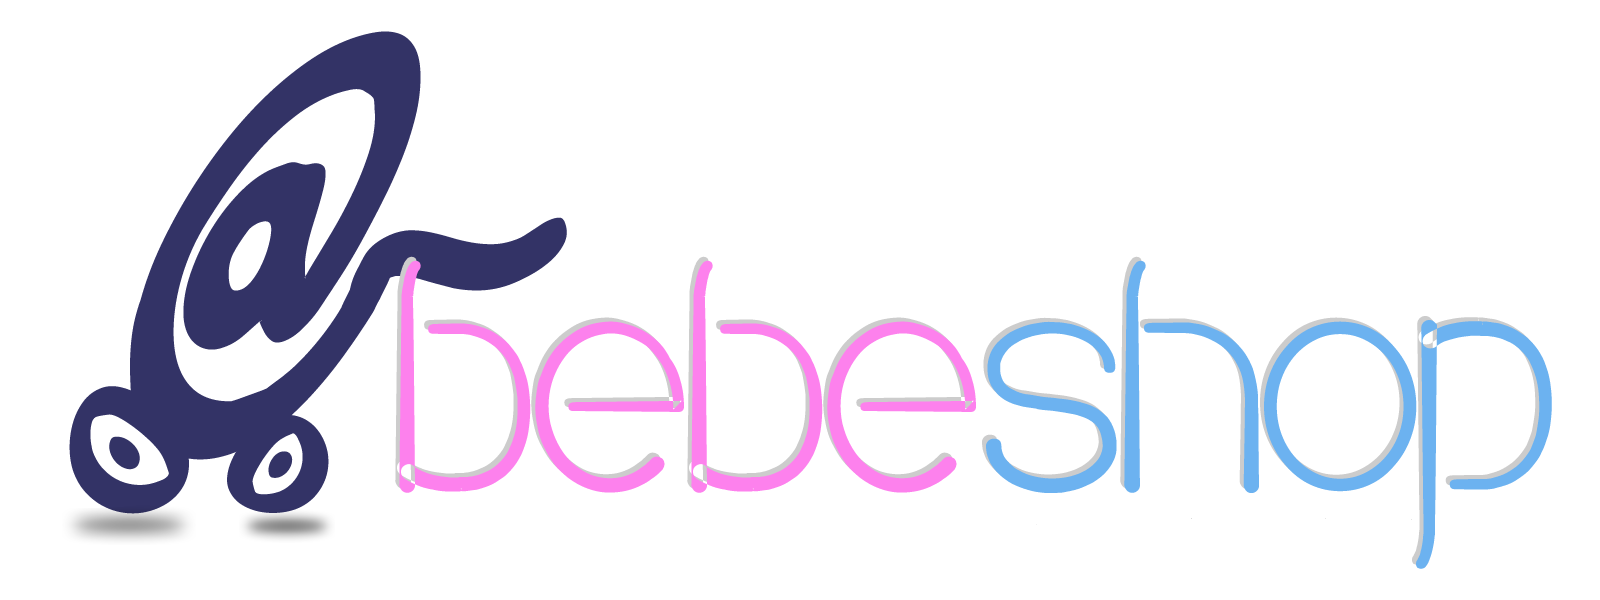 BebeShop